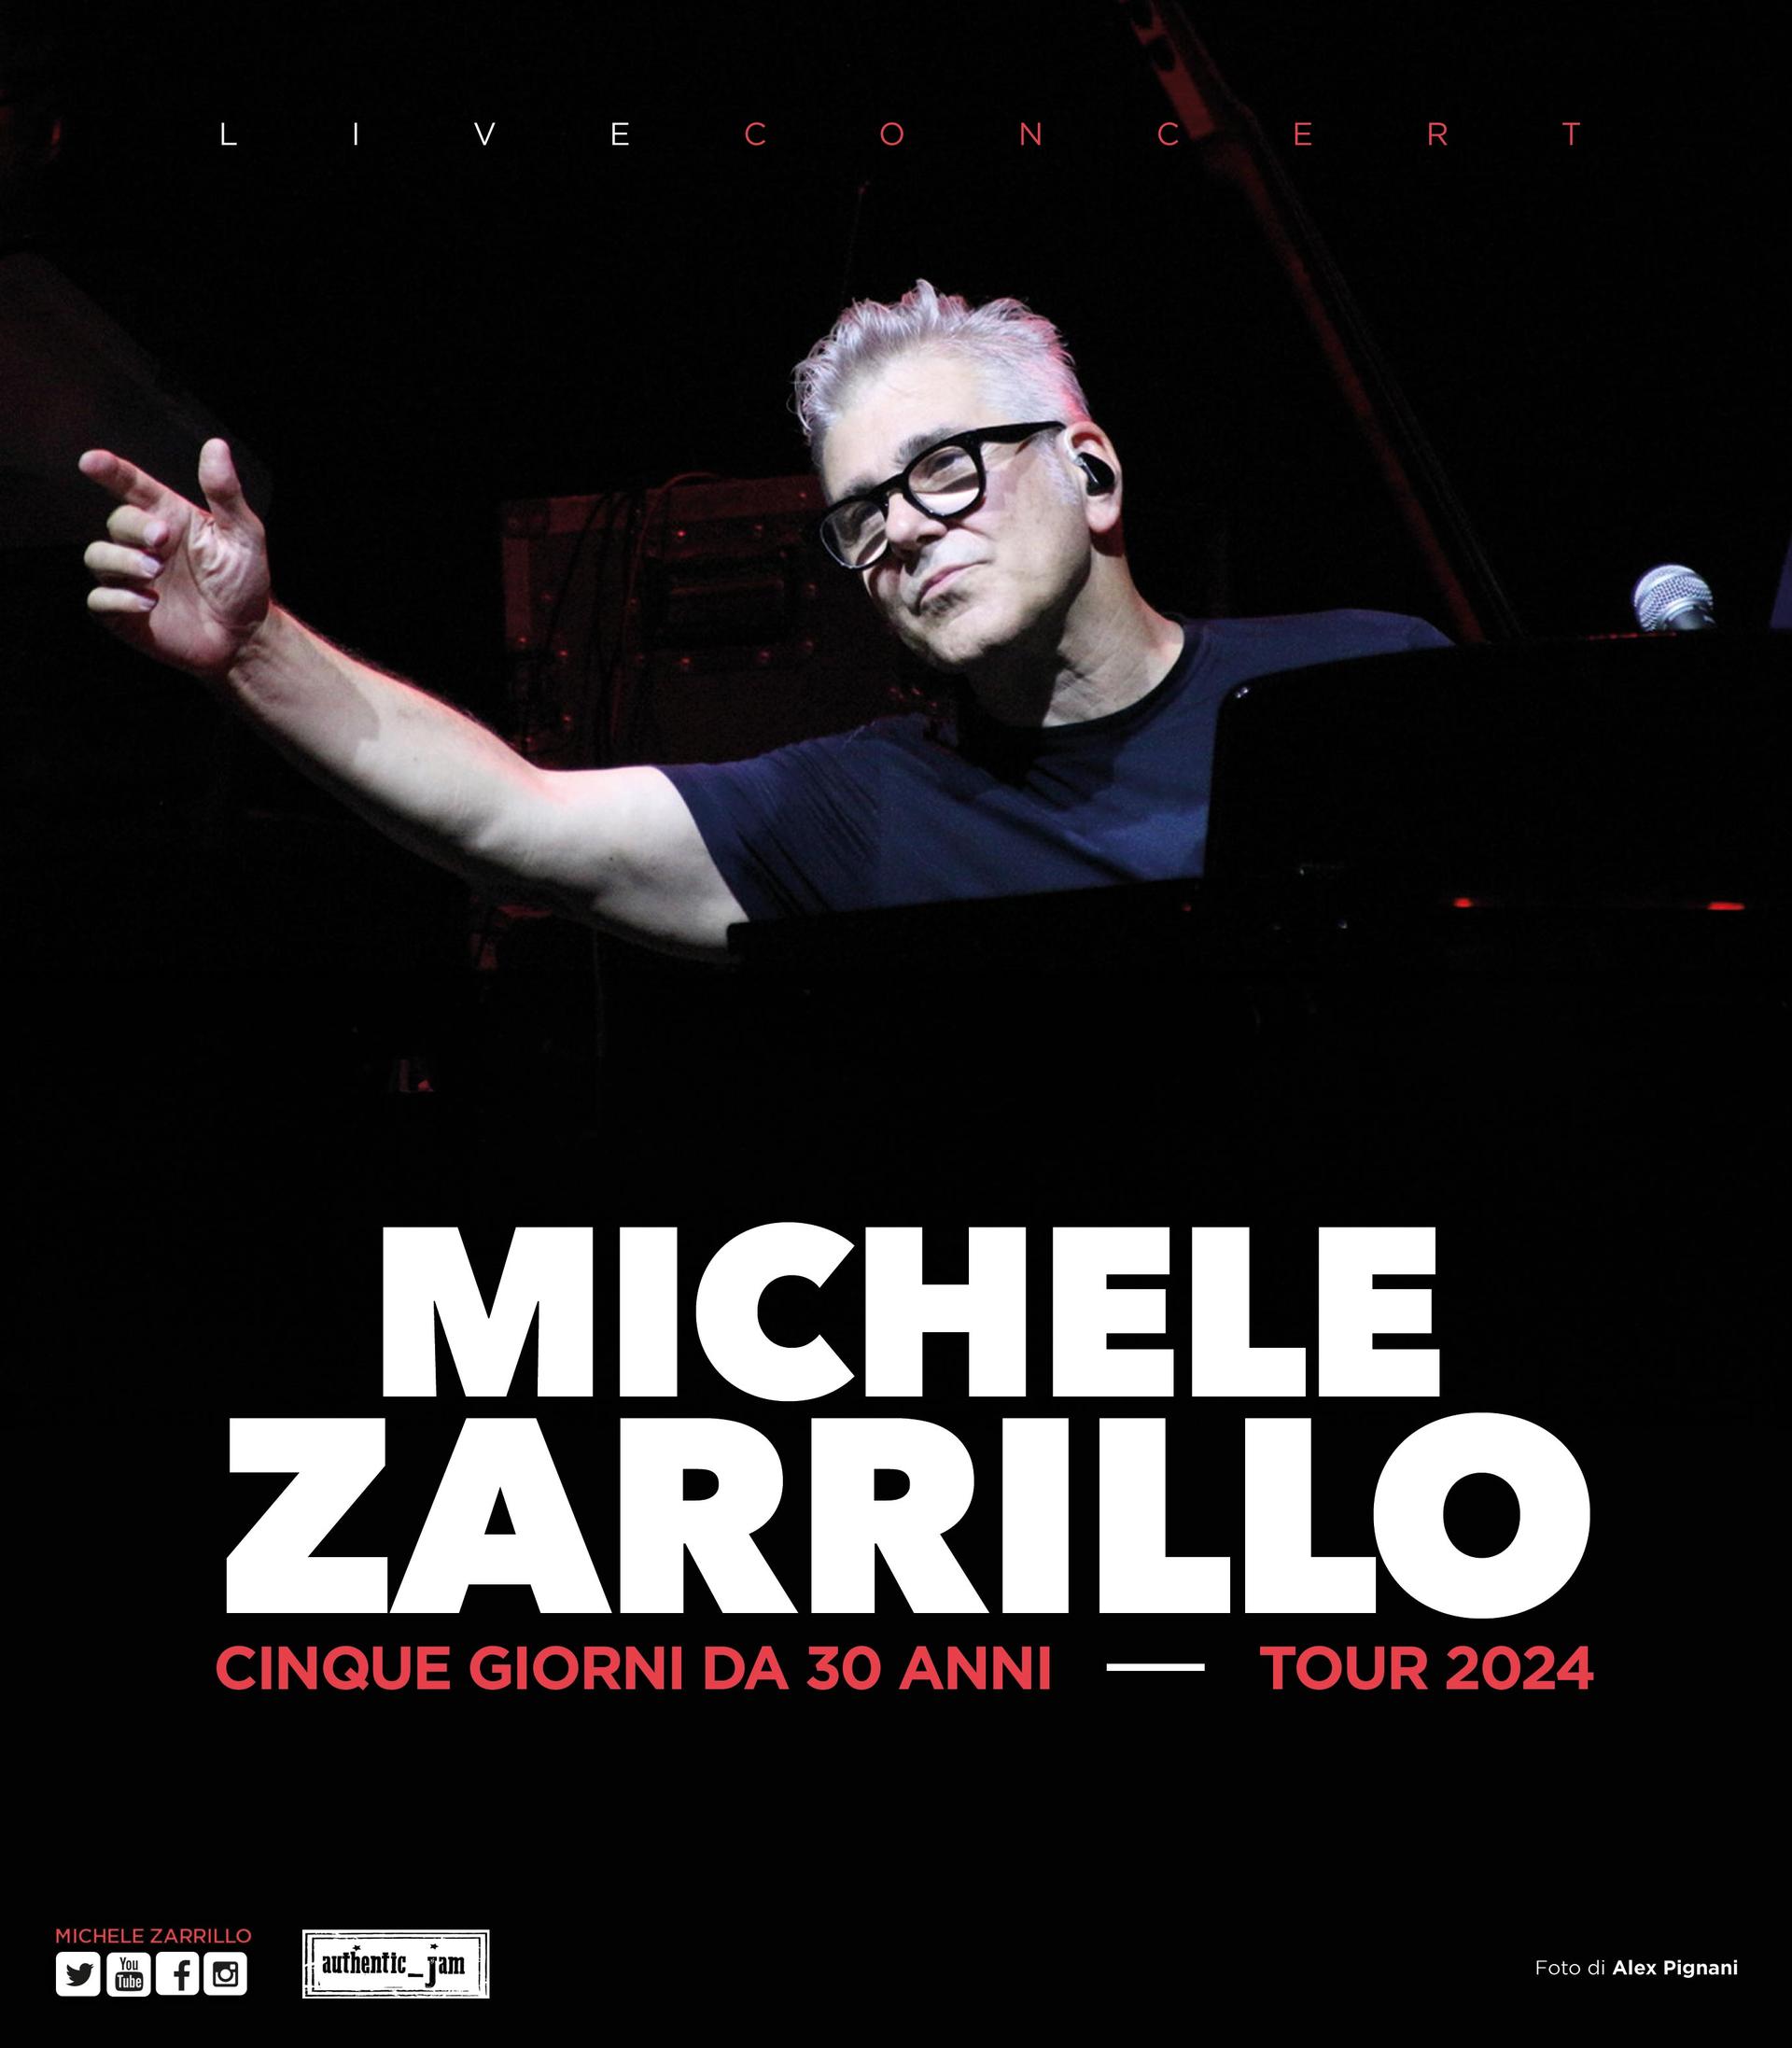 Michele Zarrillo annuncia le prime date del tour 'Cinque giorni da 30